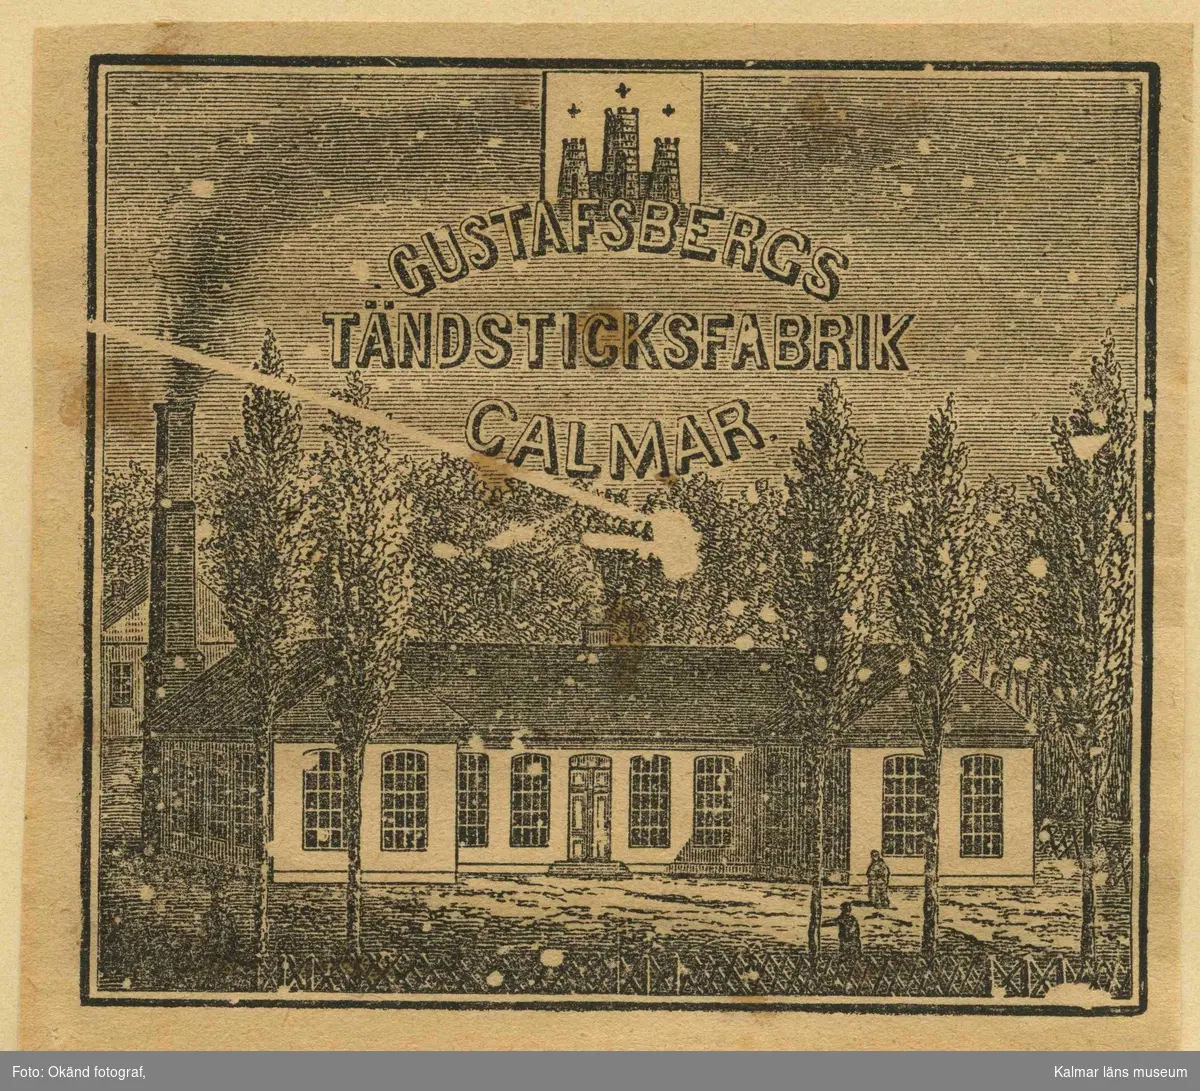 Etikett från Gustafsbergs Tändsticksfabrik.

Gustafsbergs Tändsticksfabrik startades 1858 av firman P. Lundblad & Co. vid Norra landsvägen på den tomt som senare kom att hysa Kalmar Chokladfabrik. Namnet Gustafsberg syftar på den lantgård som tidigare låg på denna plats. G bytte ägare några gånger innan handlanden C. G. Säfström övertog fabriken 1868. Han drev den sedan till 1887 då den såldes till det nystartade Swedish Match som kom att äga ett flertal fabriker. I samband med det bolagets konkurs lades driften ner 1889 men återupptogs 1893 efter att >Lindahls Tändsticksfabrik i Kalmar hade brunnit. Även Lindahls ingick i Swedish Match. År 1897 brann G men återuppbyggdes och driften var åter igång året efter. G uppgick 1913 i det nystartade bolaget Förenade Svenska Tändsticksfabriker och året efter nedlades fabriken för alltid. Fastigheten övertogs samma år av Kalmar Konfekt- och Karamellfabrik som senare kom att bli Kalmar Chokladfabrik.

(Uppgifterna är hämtade från http://www.kalmarlexikon.se/index.php/g/gustafsbergs-taendsticksfabrik.html)